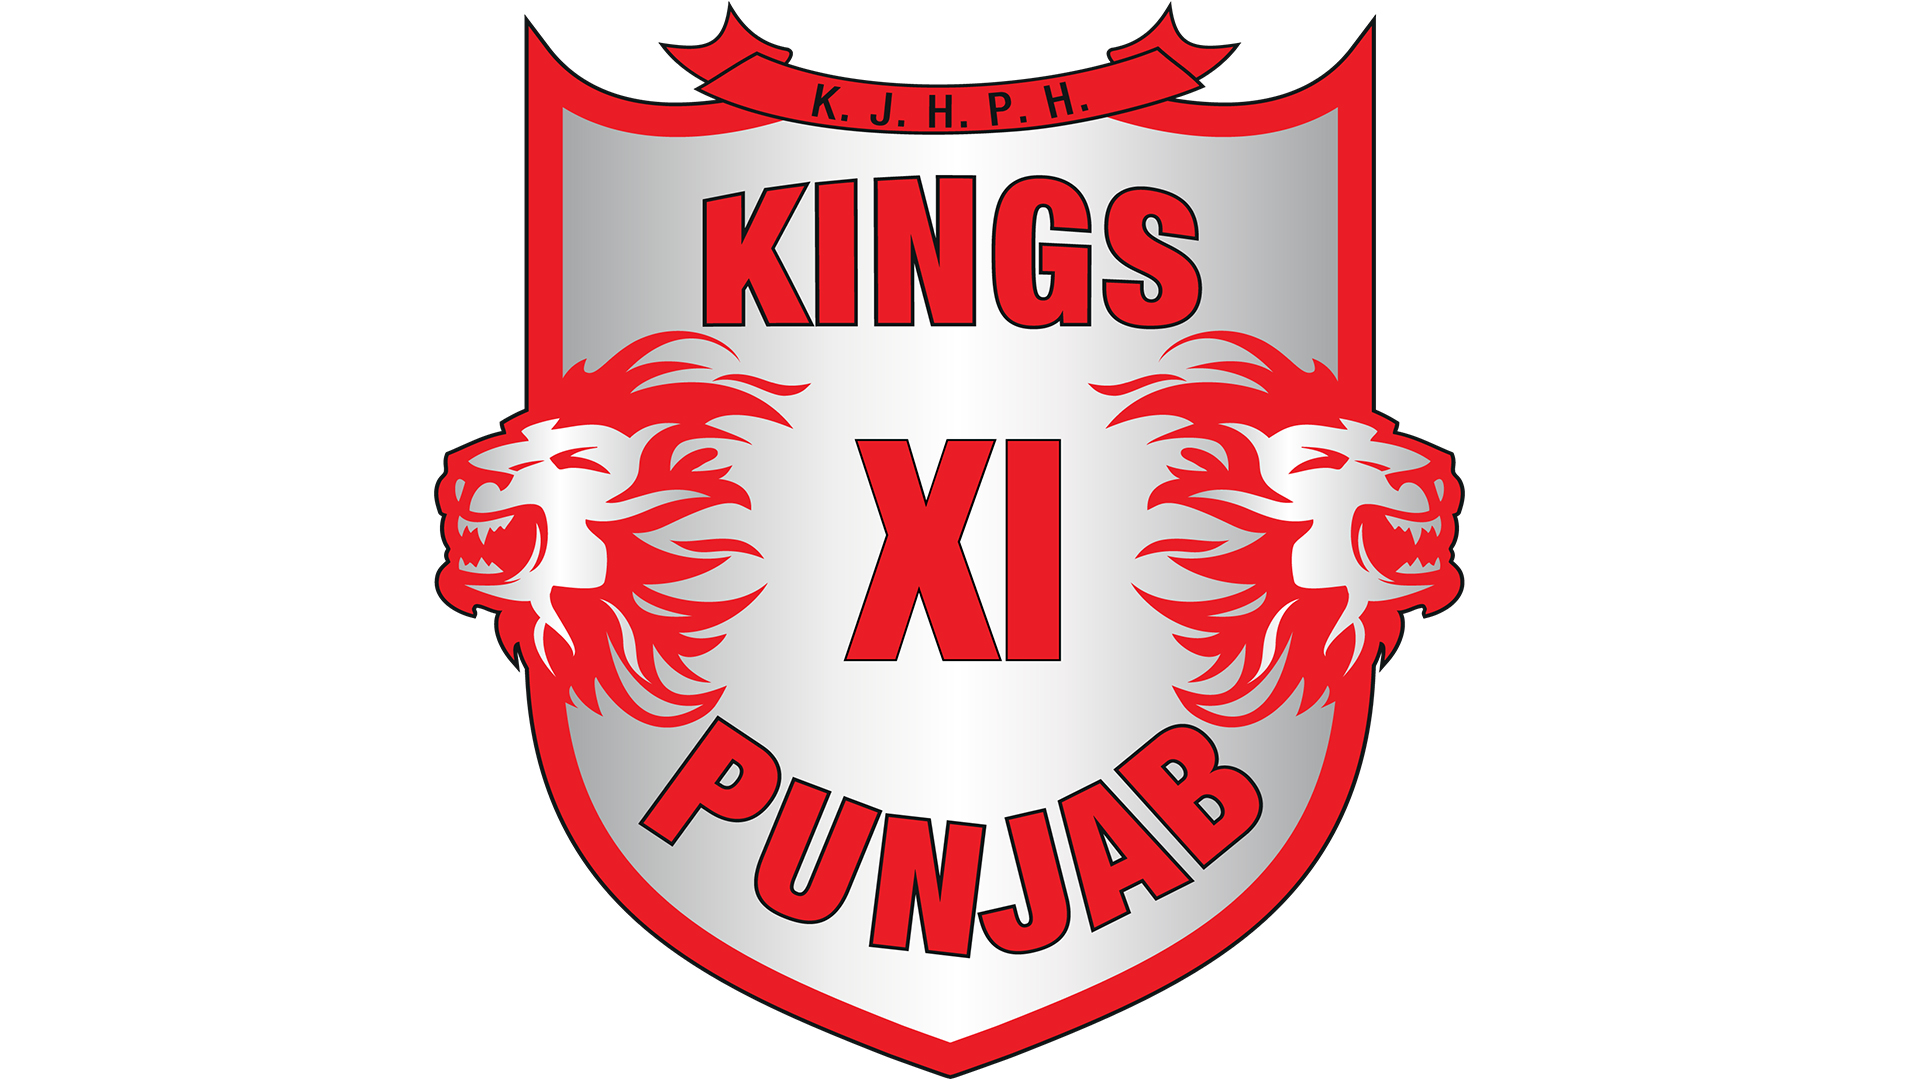 official logo of kings xi punjab team